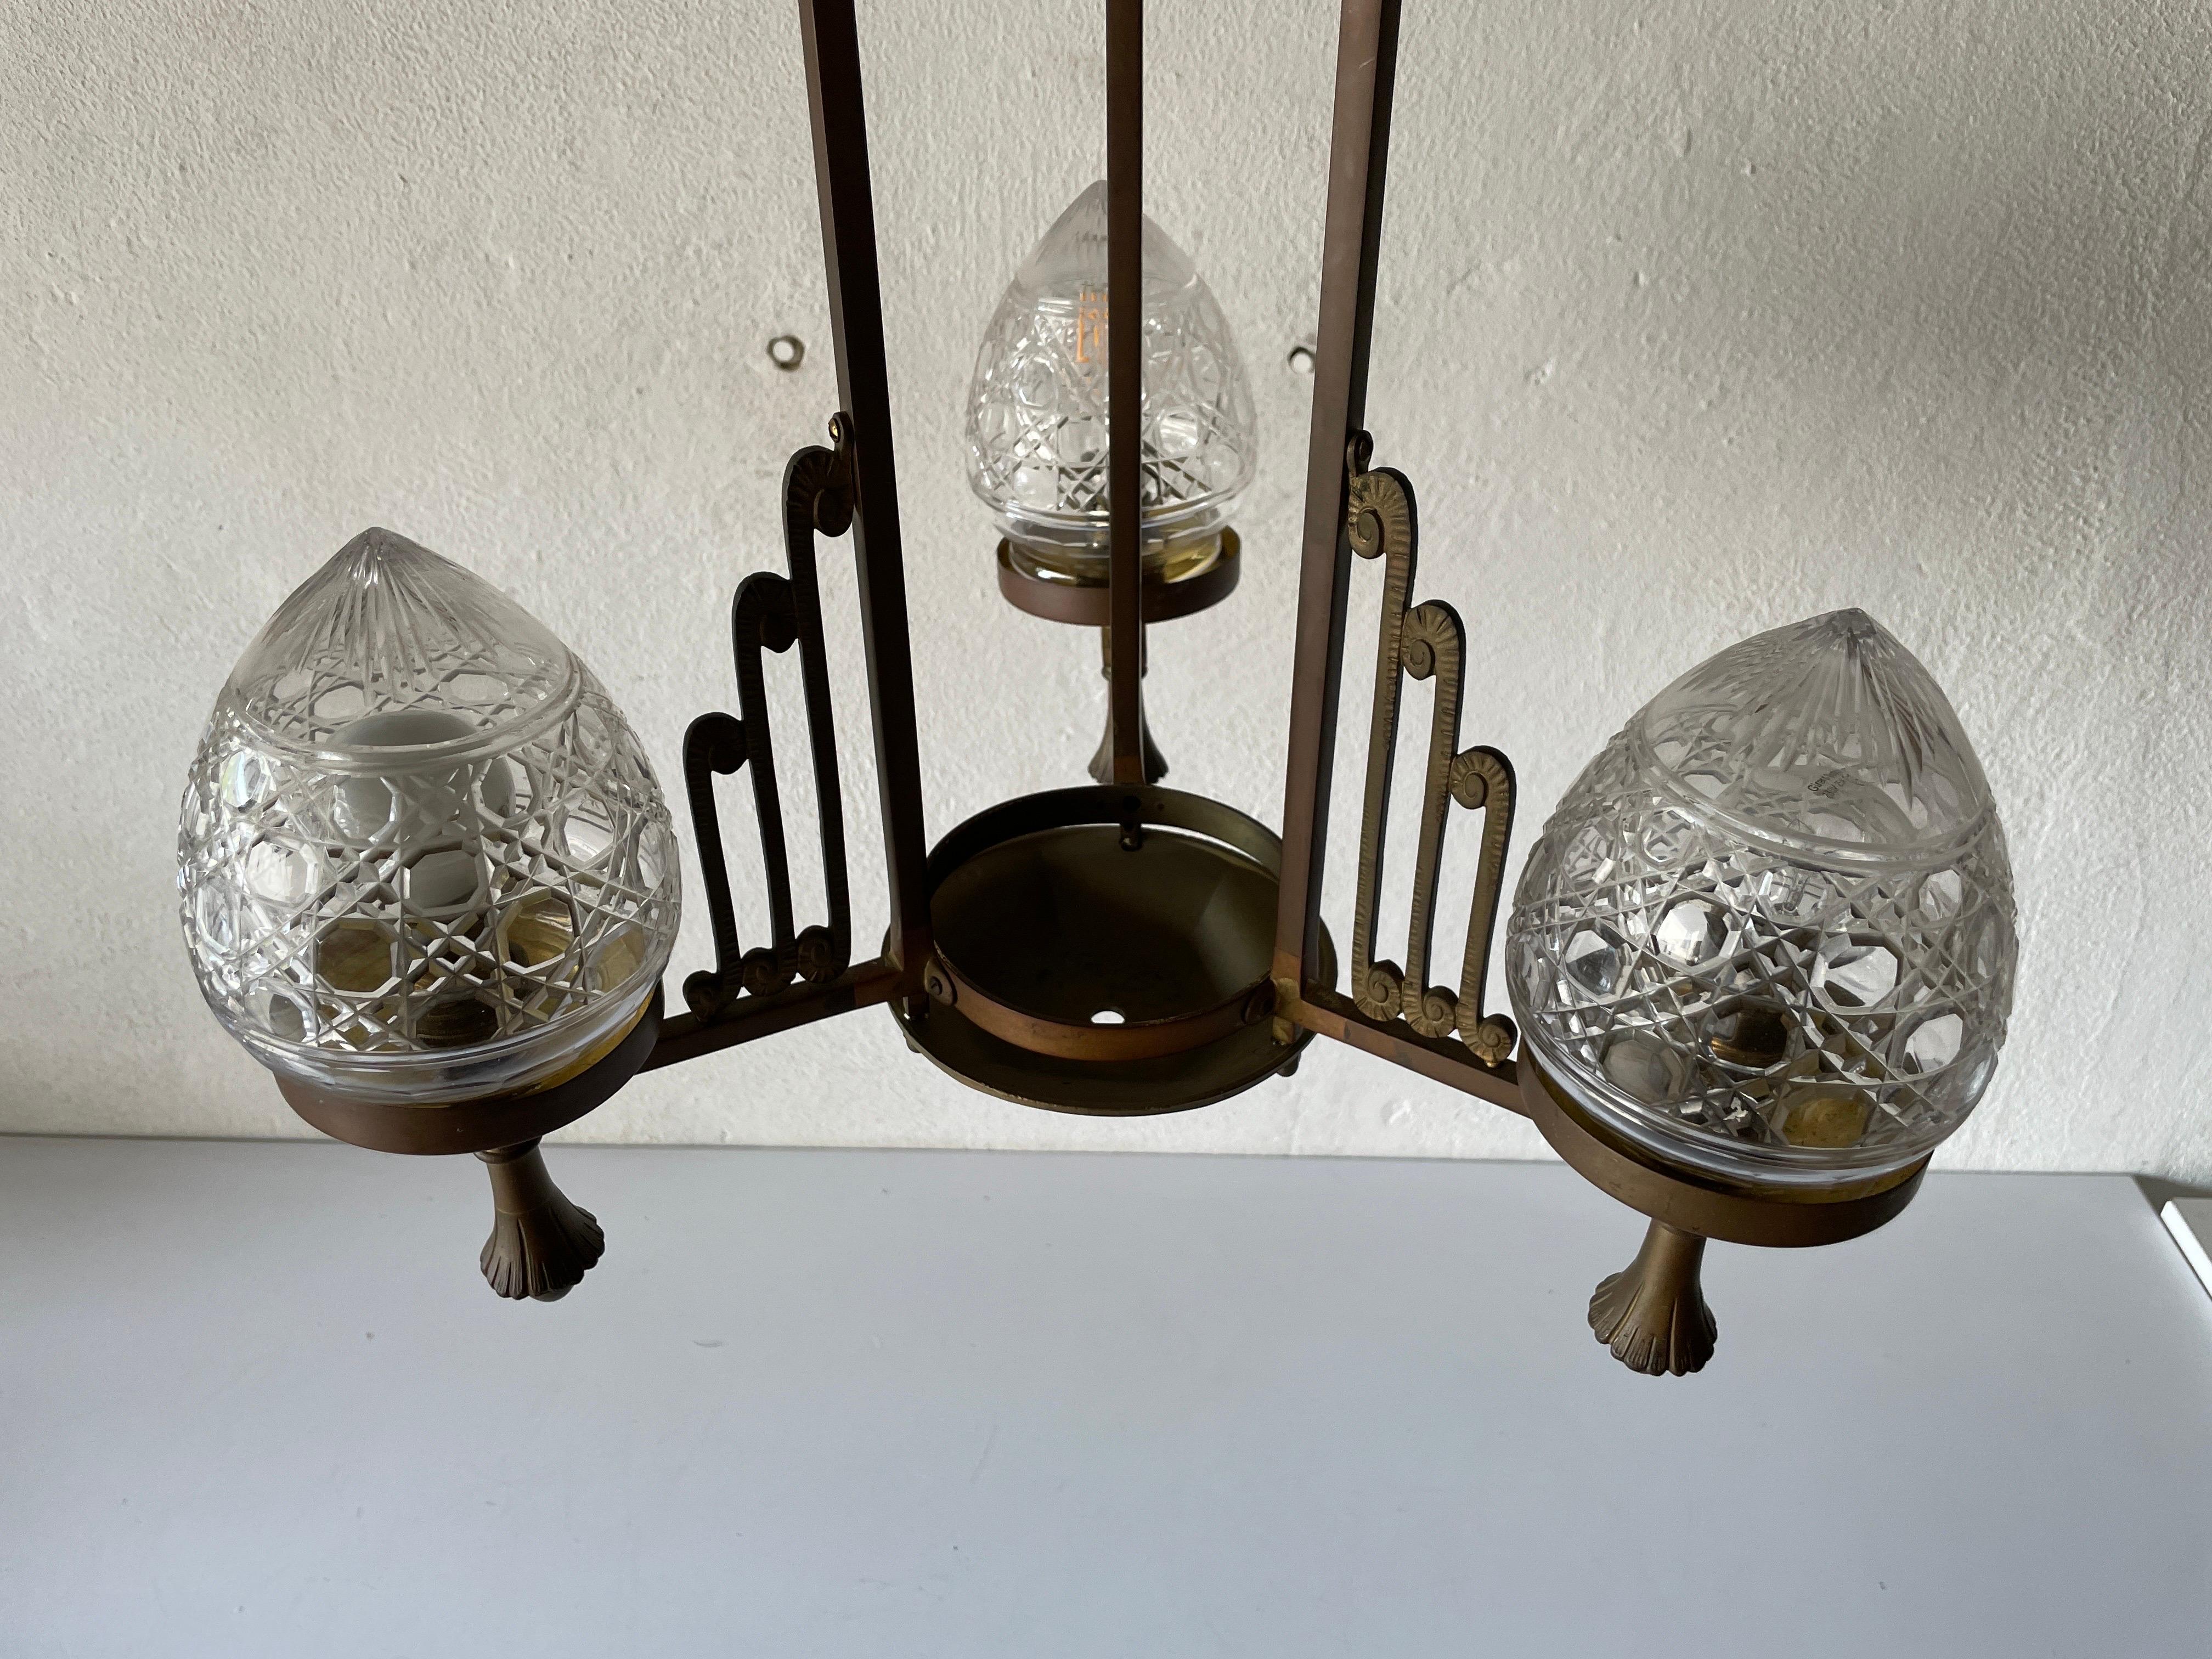 Einzigartiger französischer architektonischer Kupferkronleuchter, 1940er Jahre, Frankreich

Elegantes Design Hängelampe

Der Lampenschirm ist in gutem Zustand und sehr sauber. 
Diese Lampe funktioniert mit 3x B22 Französisch Glühbirne. Maximal